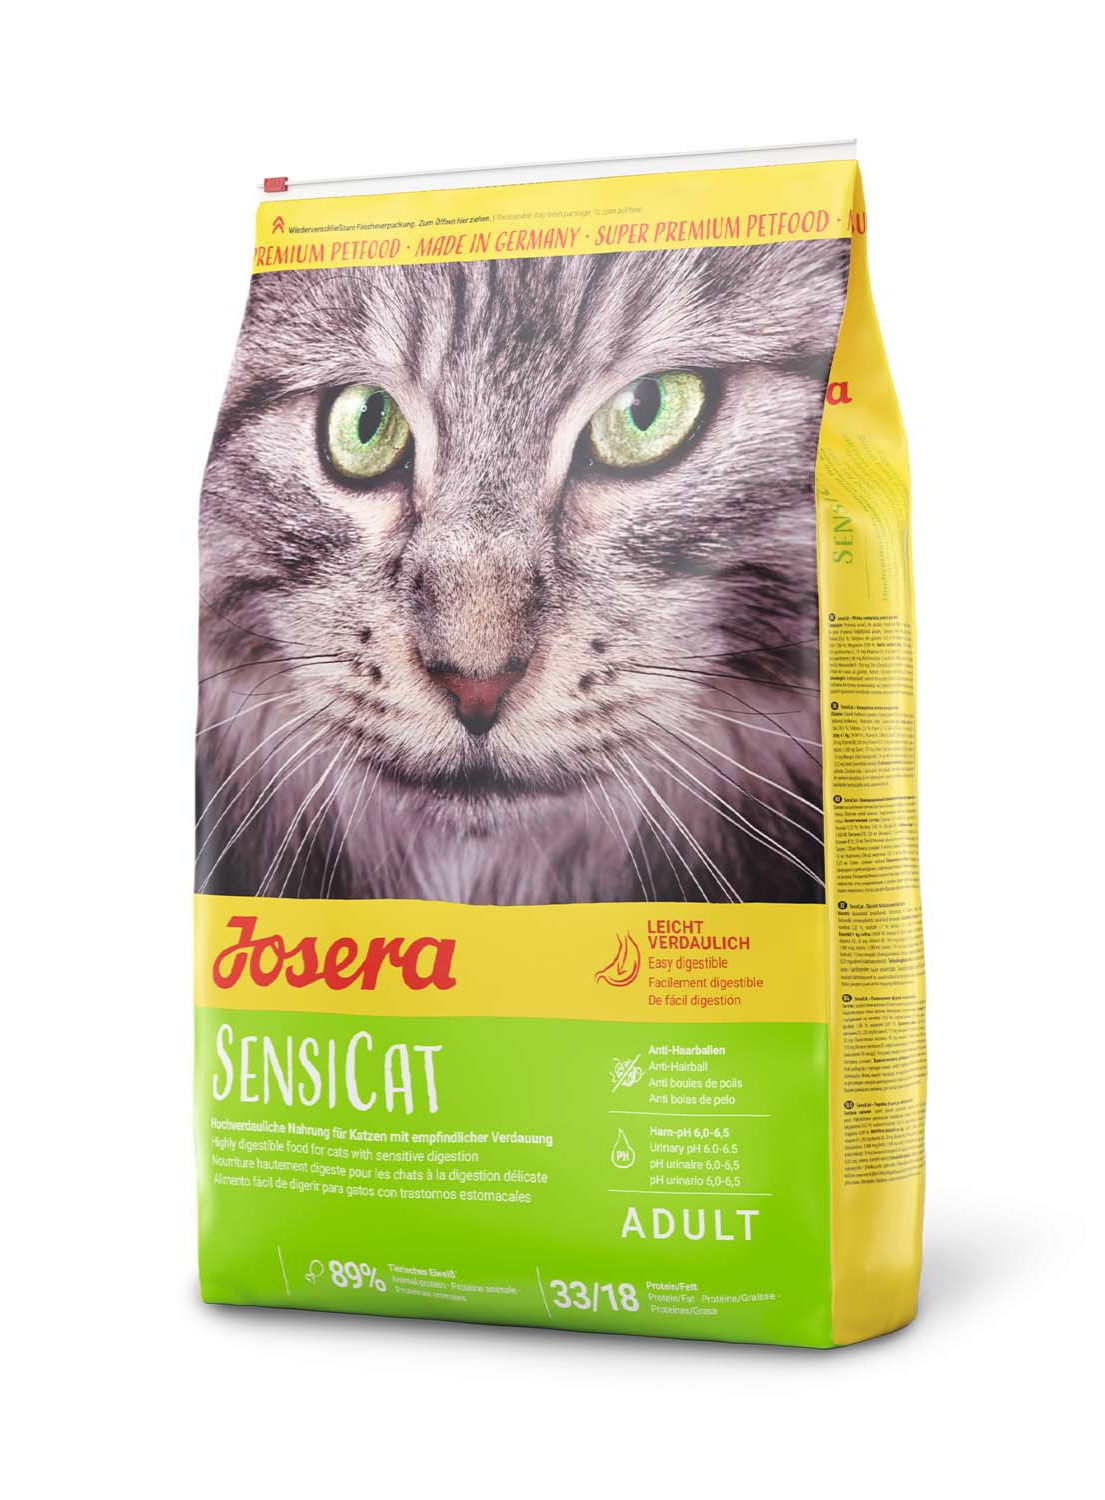 غذای خشک گربه جوسرا سنسی کت Josera Sensicat وزن ۱۰ کیلوگرم